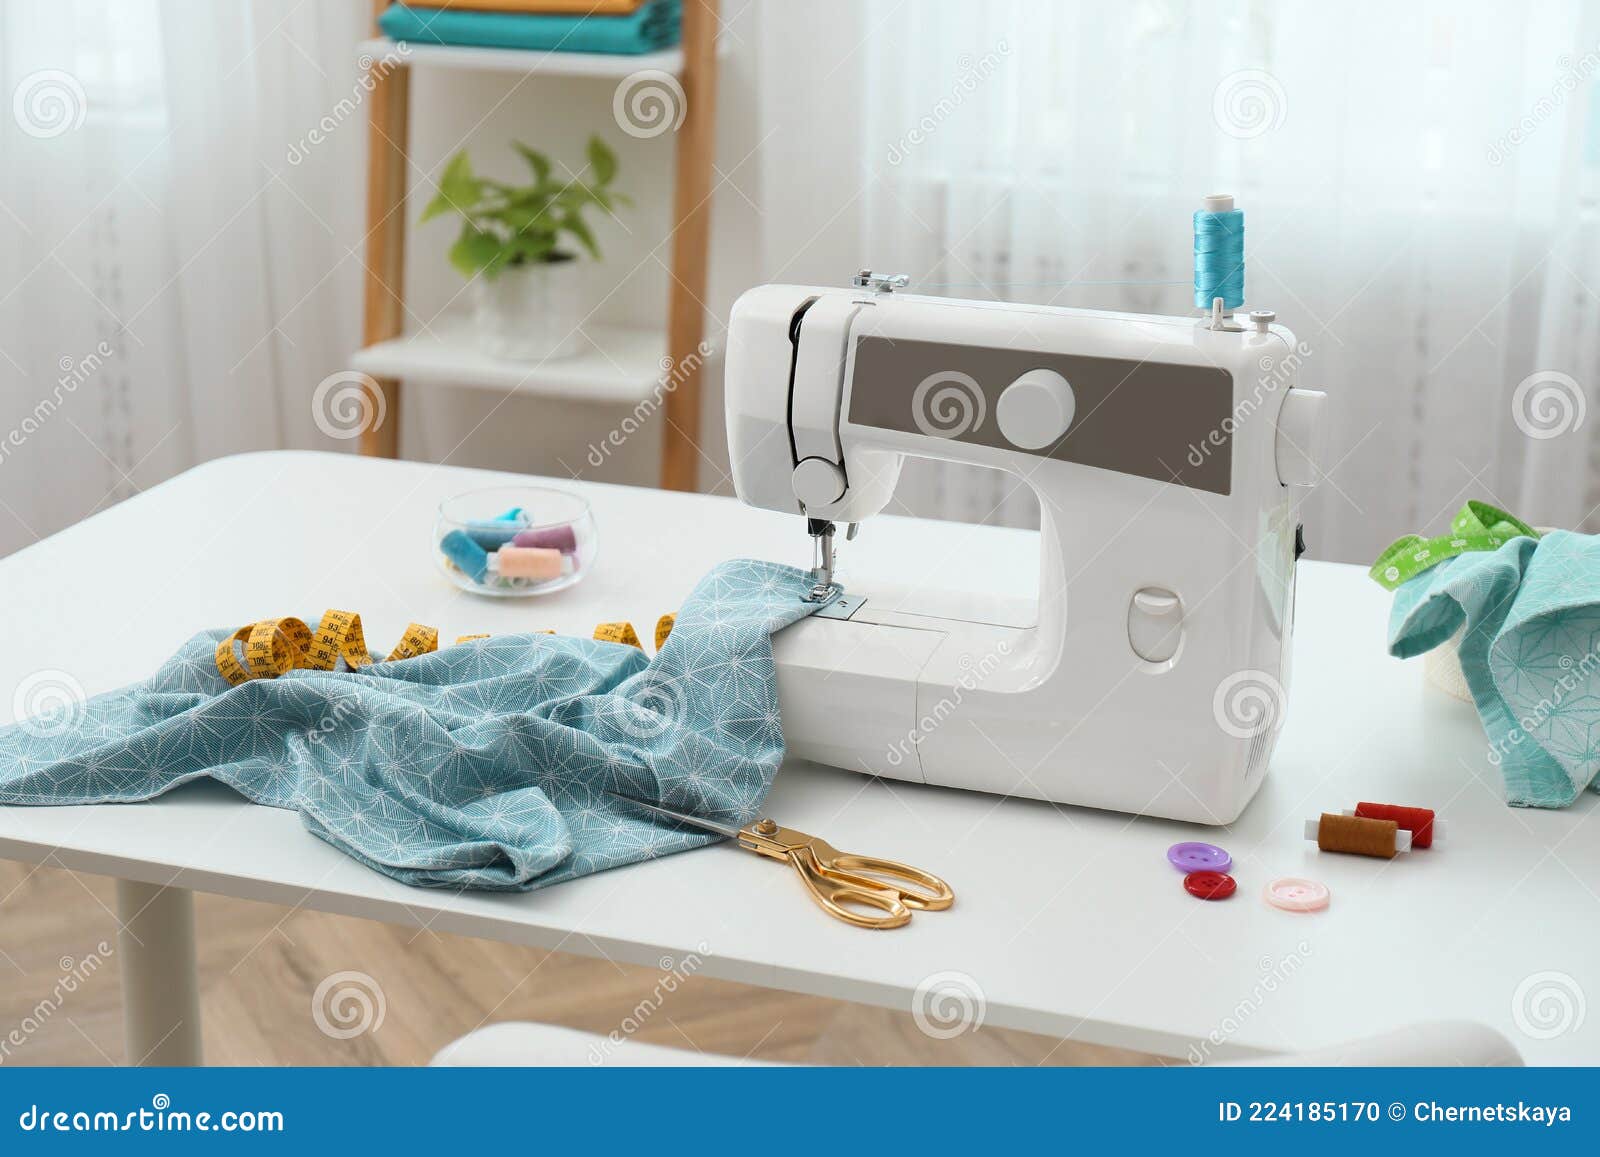 Máquinas de coser y accesorios